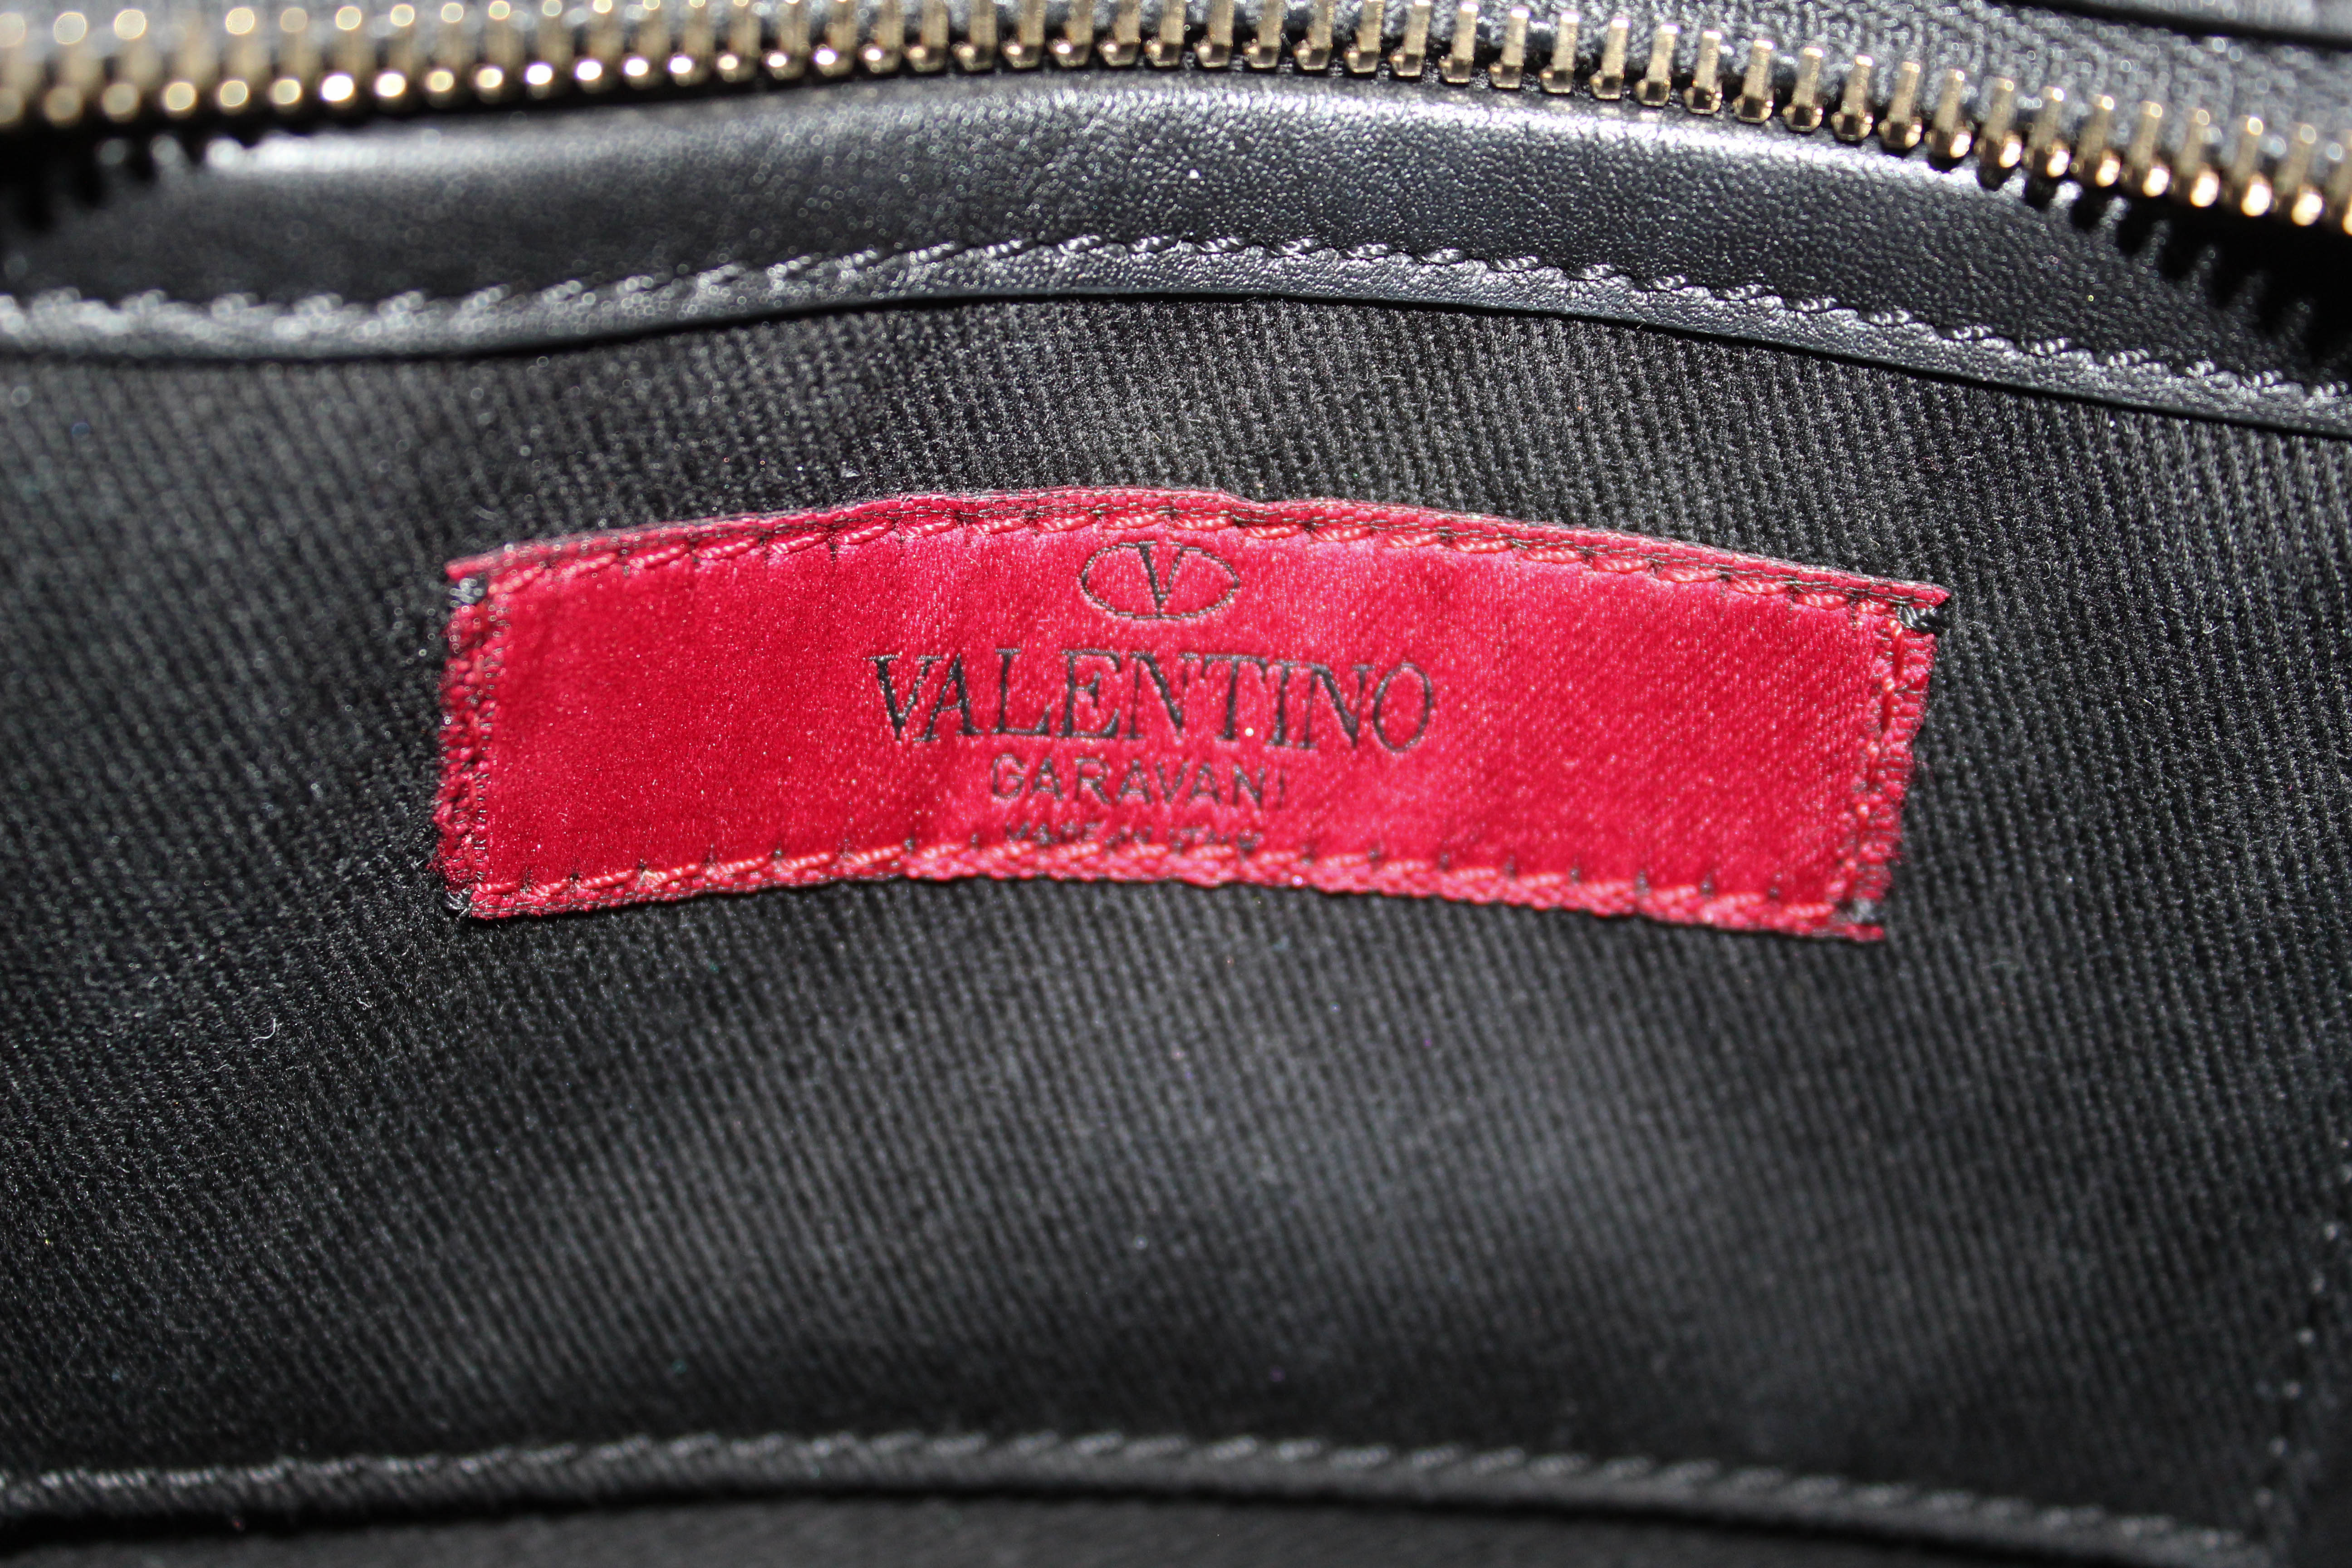 How to recognize an original Valentino Rockstud bag